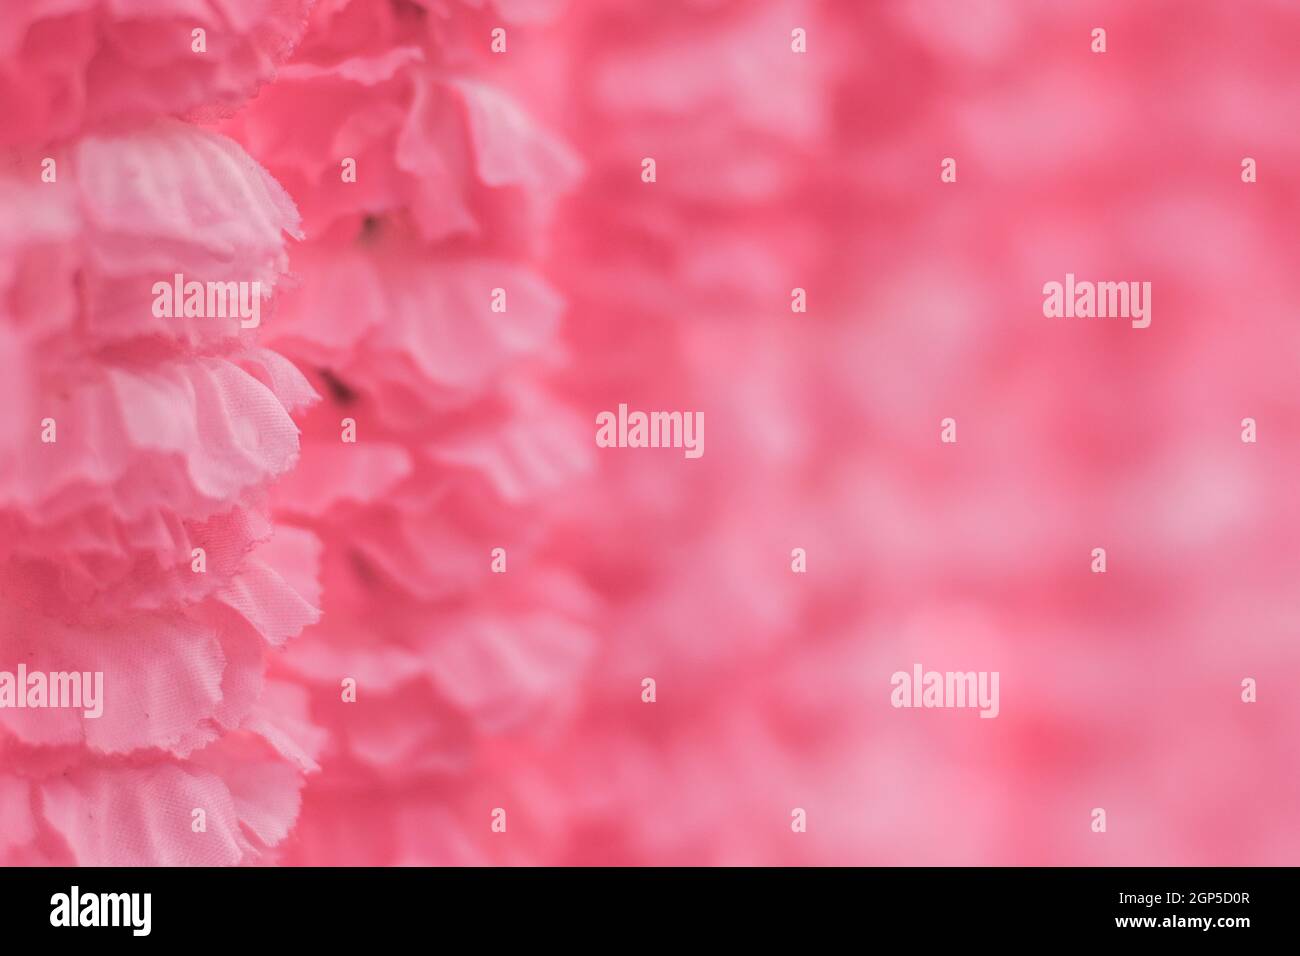 Selektive Fokus schöne rosa Blumen Hintergrund. Abstrakt weichen süßen rosa Blume Hintergrund. Schöne rosa Rosen Blume Blüte Blume Hintergrund Stockfoto